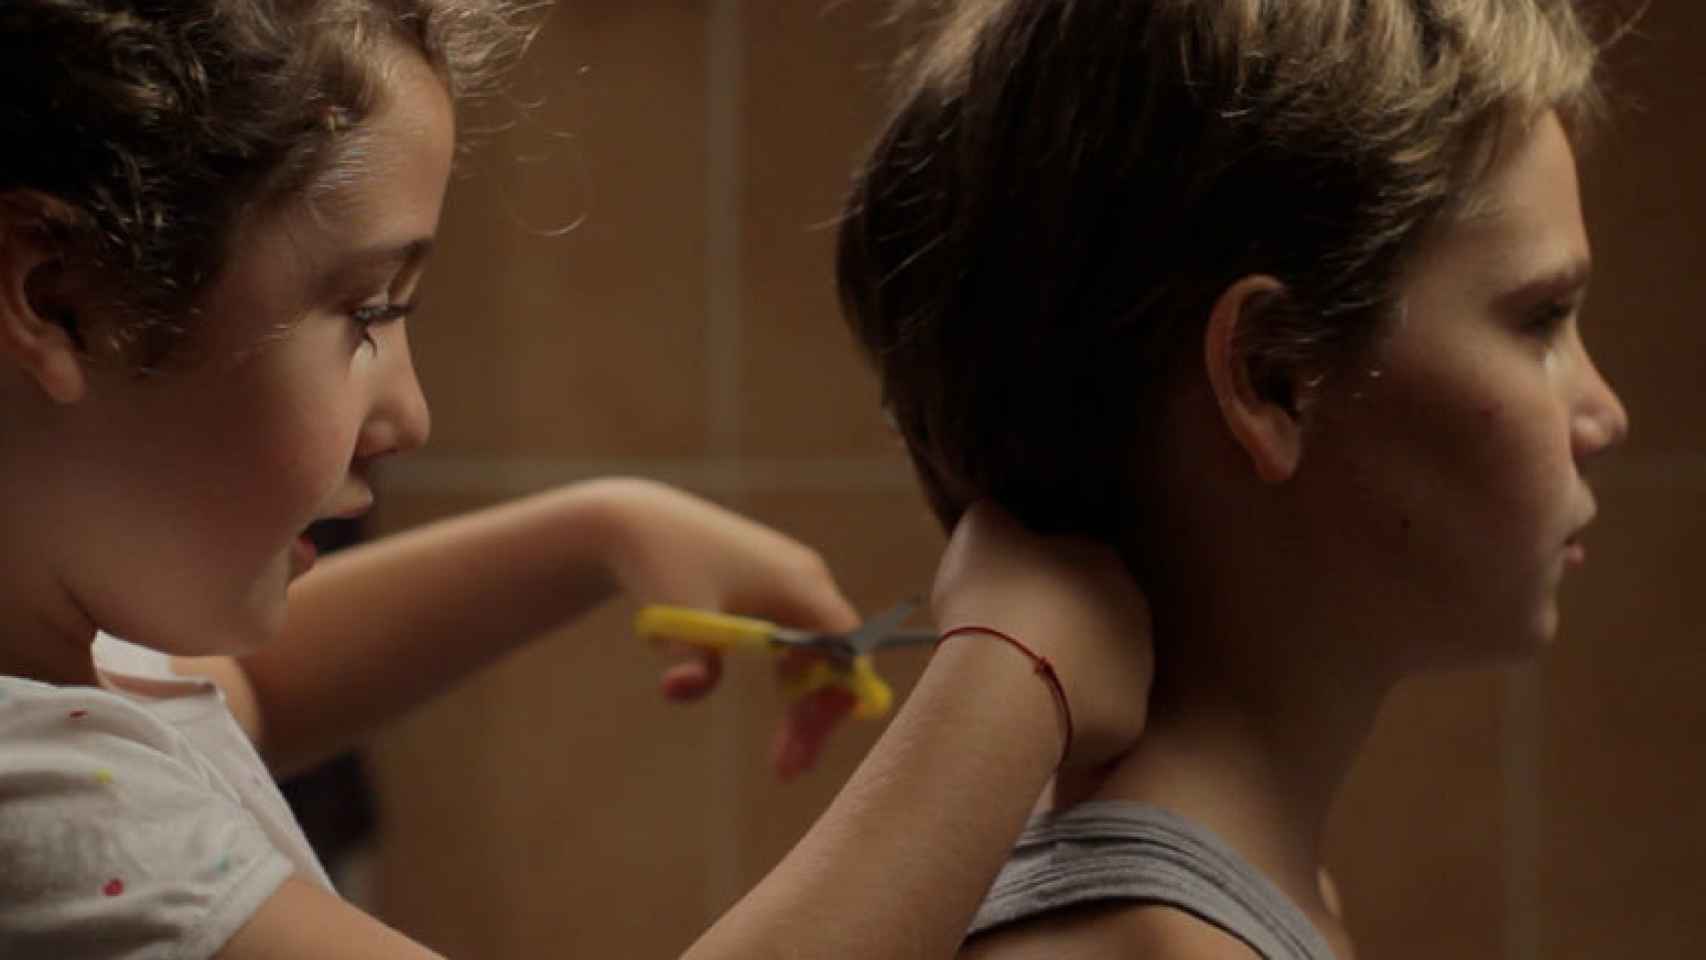 Fotograma de Tomboy, dirigida por Céline Sciamma, un filme sobre infancia y transgénero.